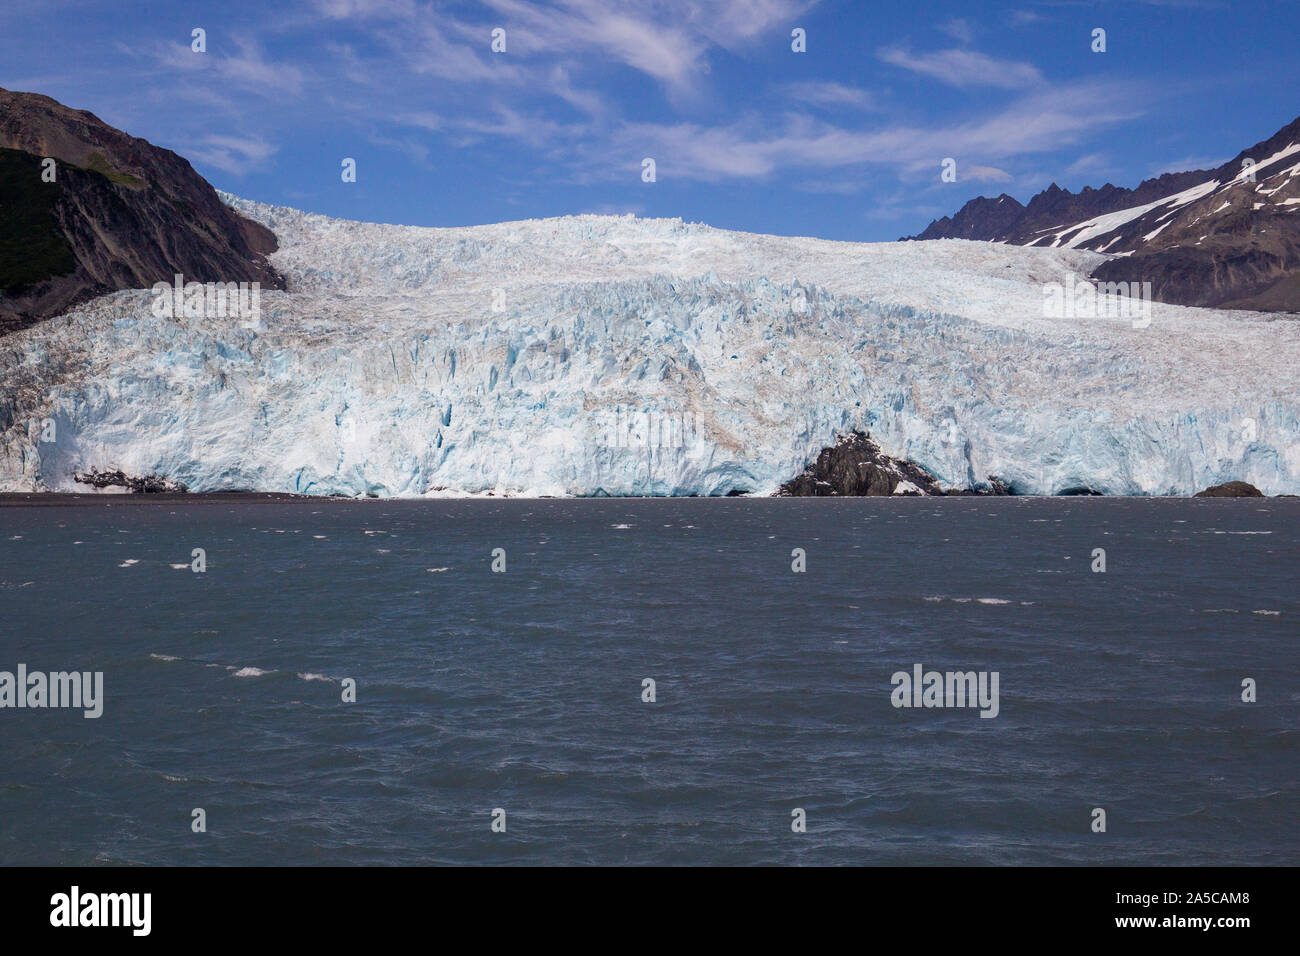 Teil des Kenai Fjords National Park, Aialik Gletscher ist ein Gletscher in der Kenai Halbinsel Borough in Alaska in der Nähe von Seward. Stockfoto